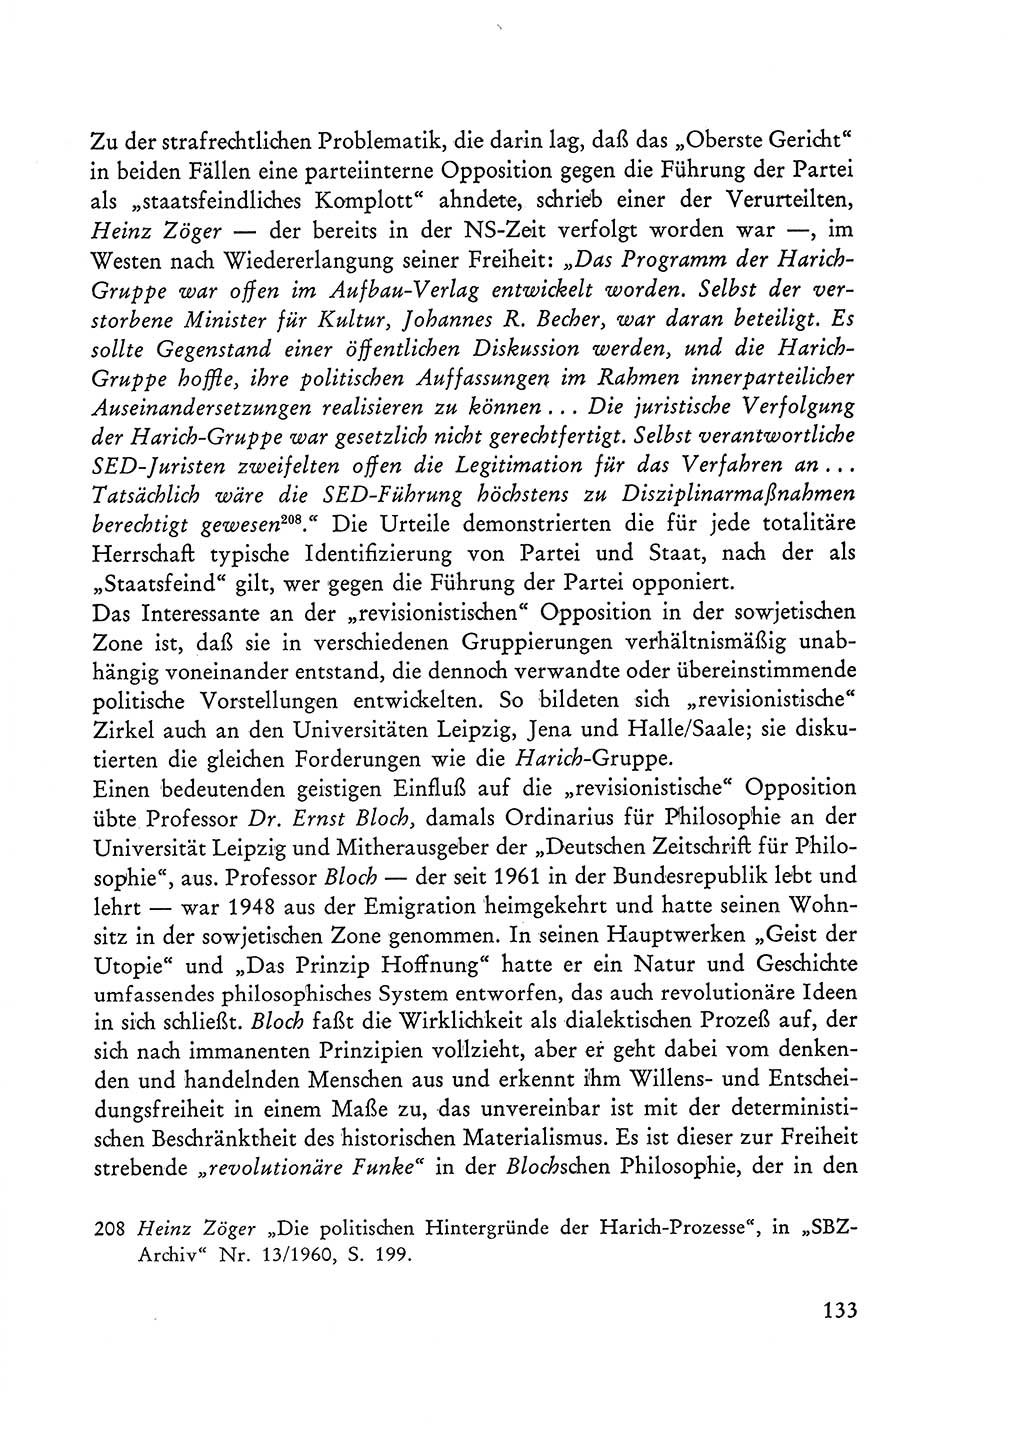 Selbstbehauptung und Widerstand in der Sowjetischen Besatzungszone (SBZ) Deutschlands [Deutsche Demokratische Republik (DDR)] 1964, Seite 133 (Selbstbeh. Wdst. SBZ Dtl. DDR 1964, S. 133)